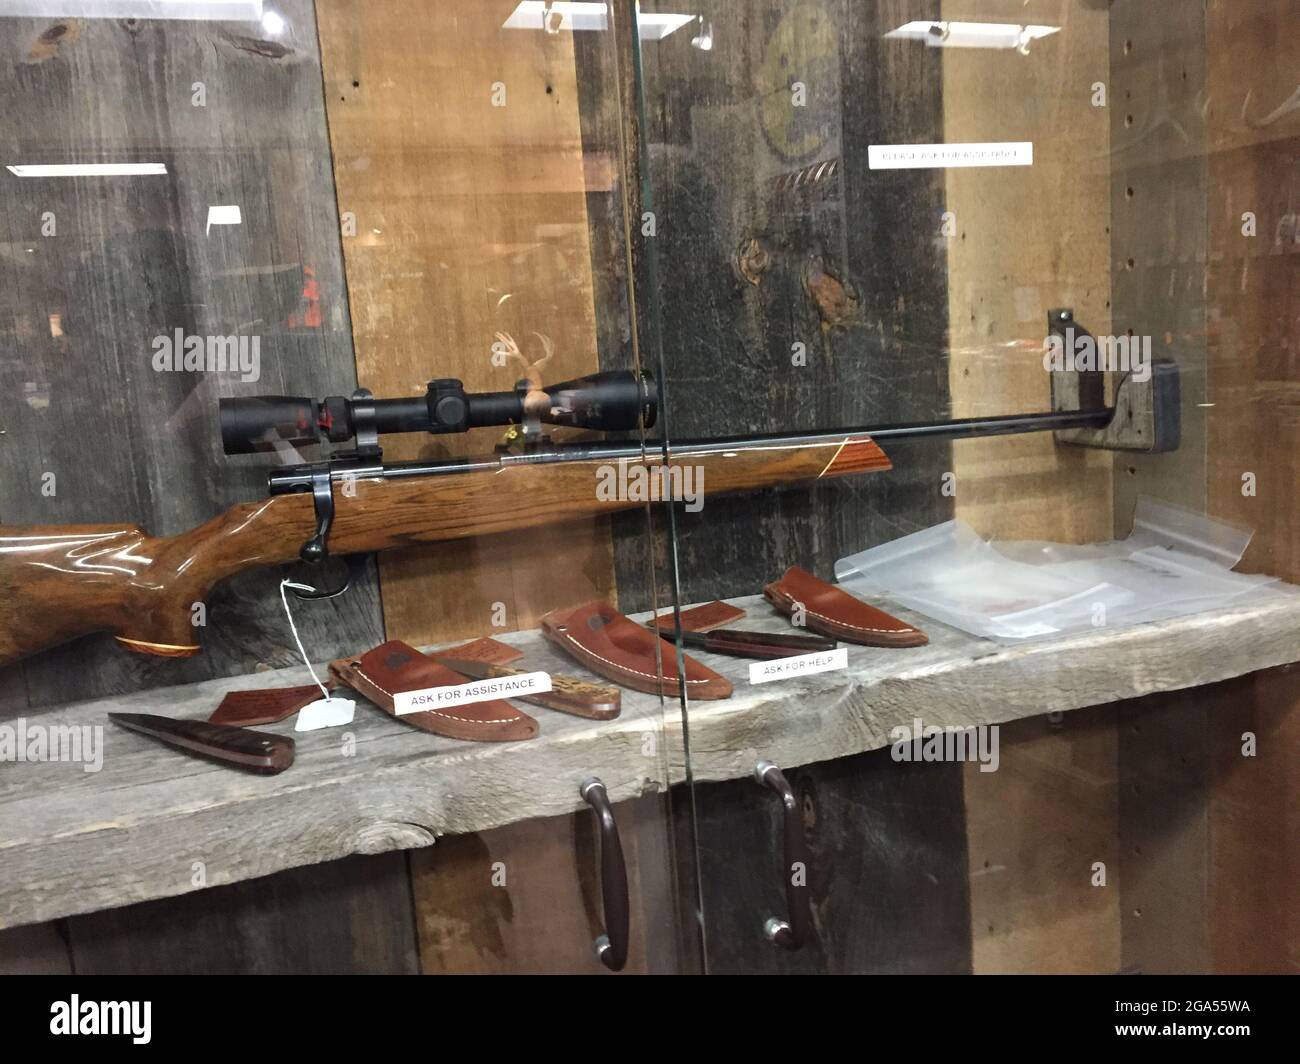 Les armes à feu sont vendues aux États-Unis Banque D'Images